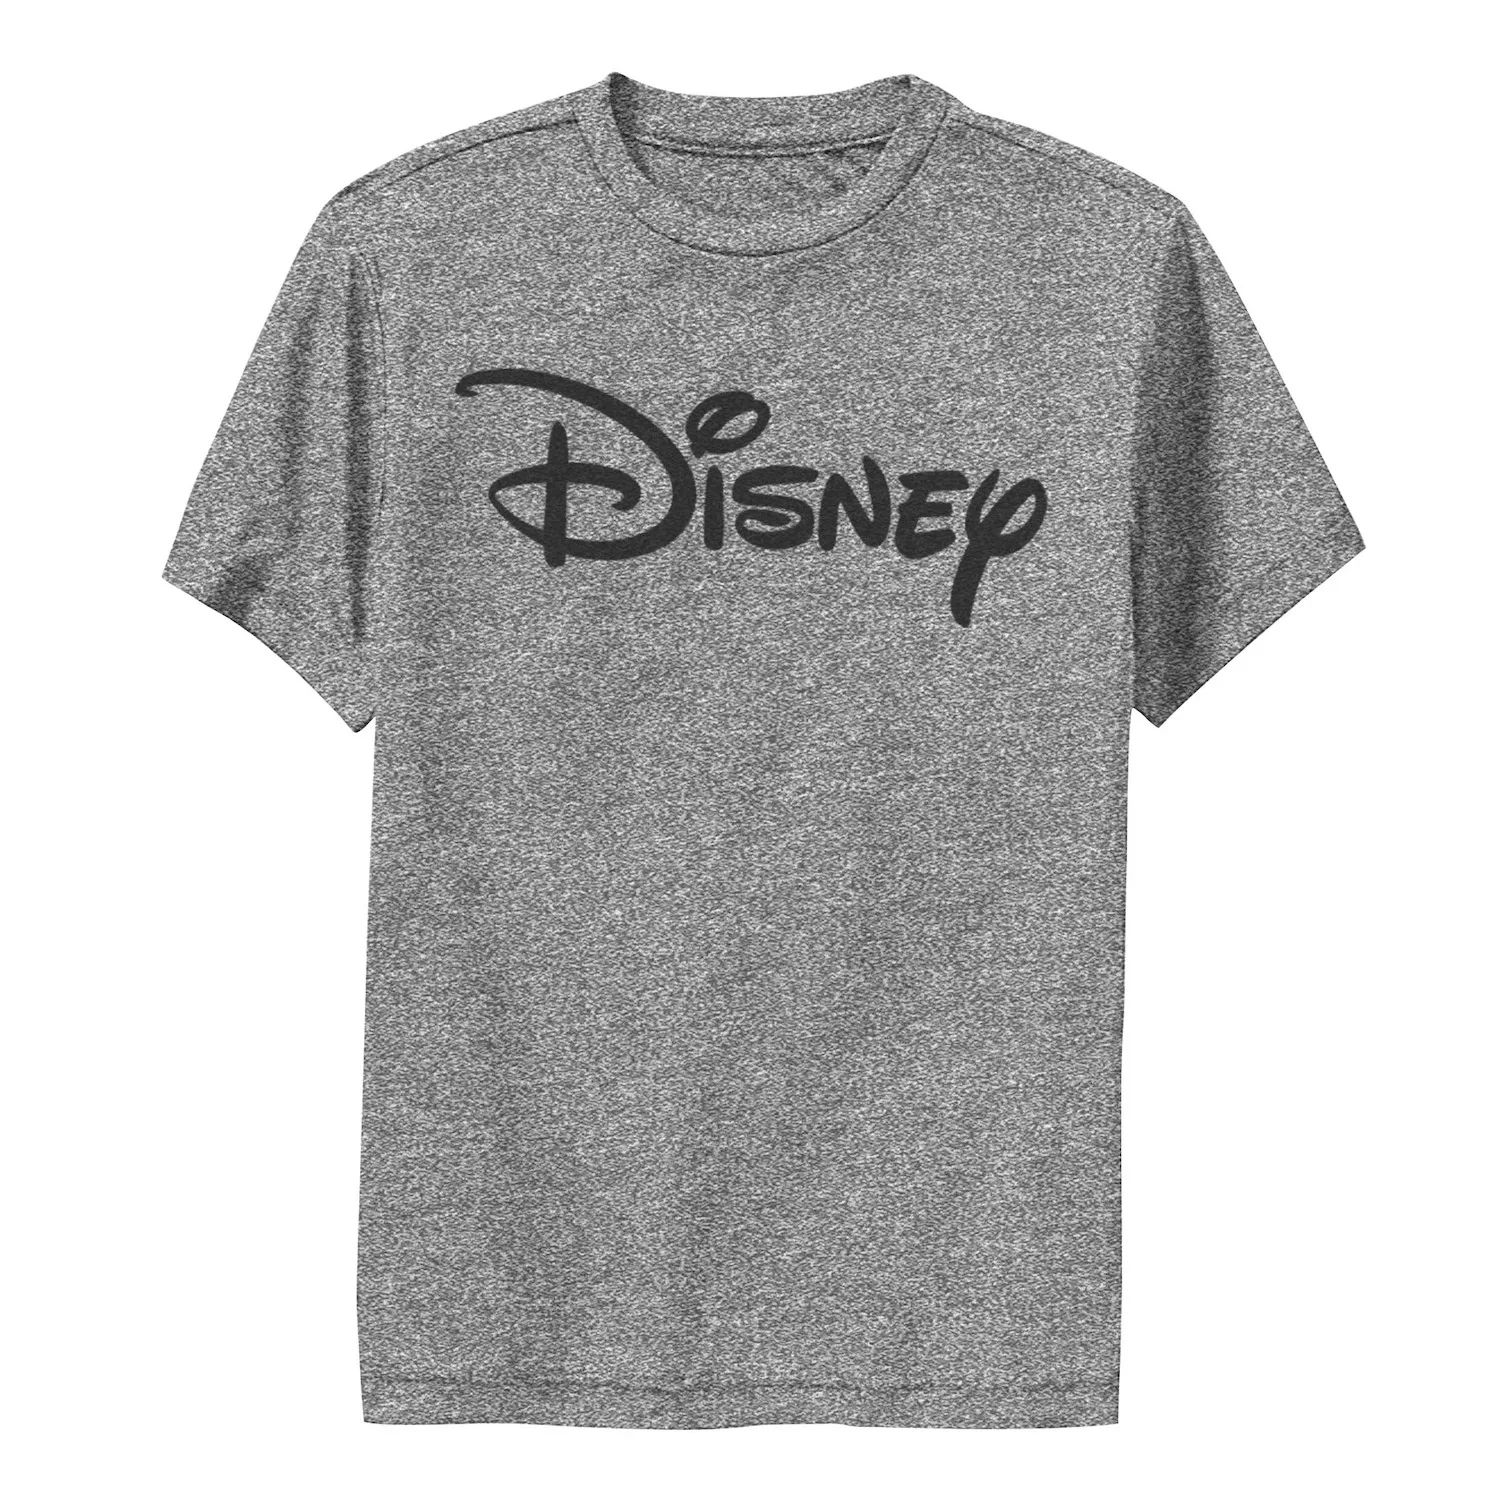 Базовая футболка Disney с логотипом Disney для мальчиков 8–20 лет и графическим рисунком Disney базовая футболка disney с логотипом disney для мальчиков 8–20 лет и графическим рисунком disney